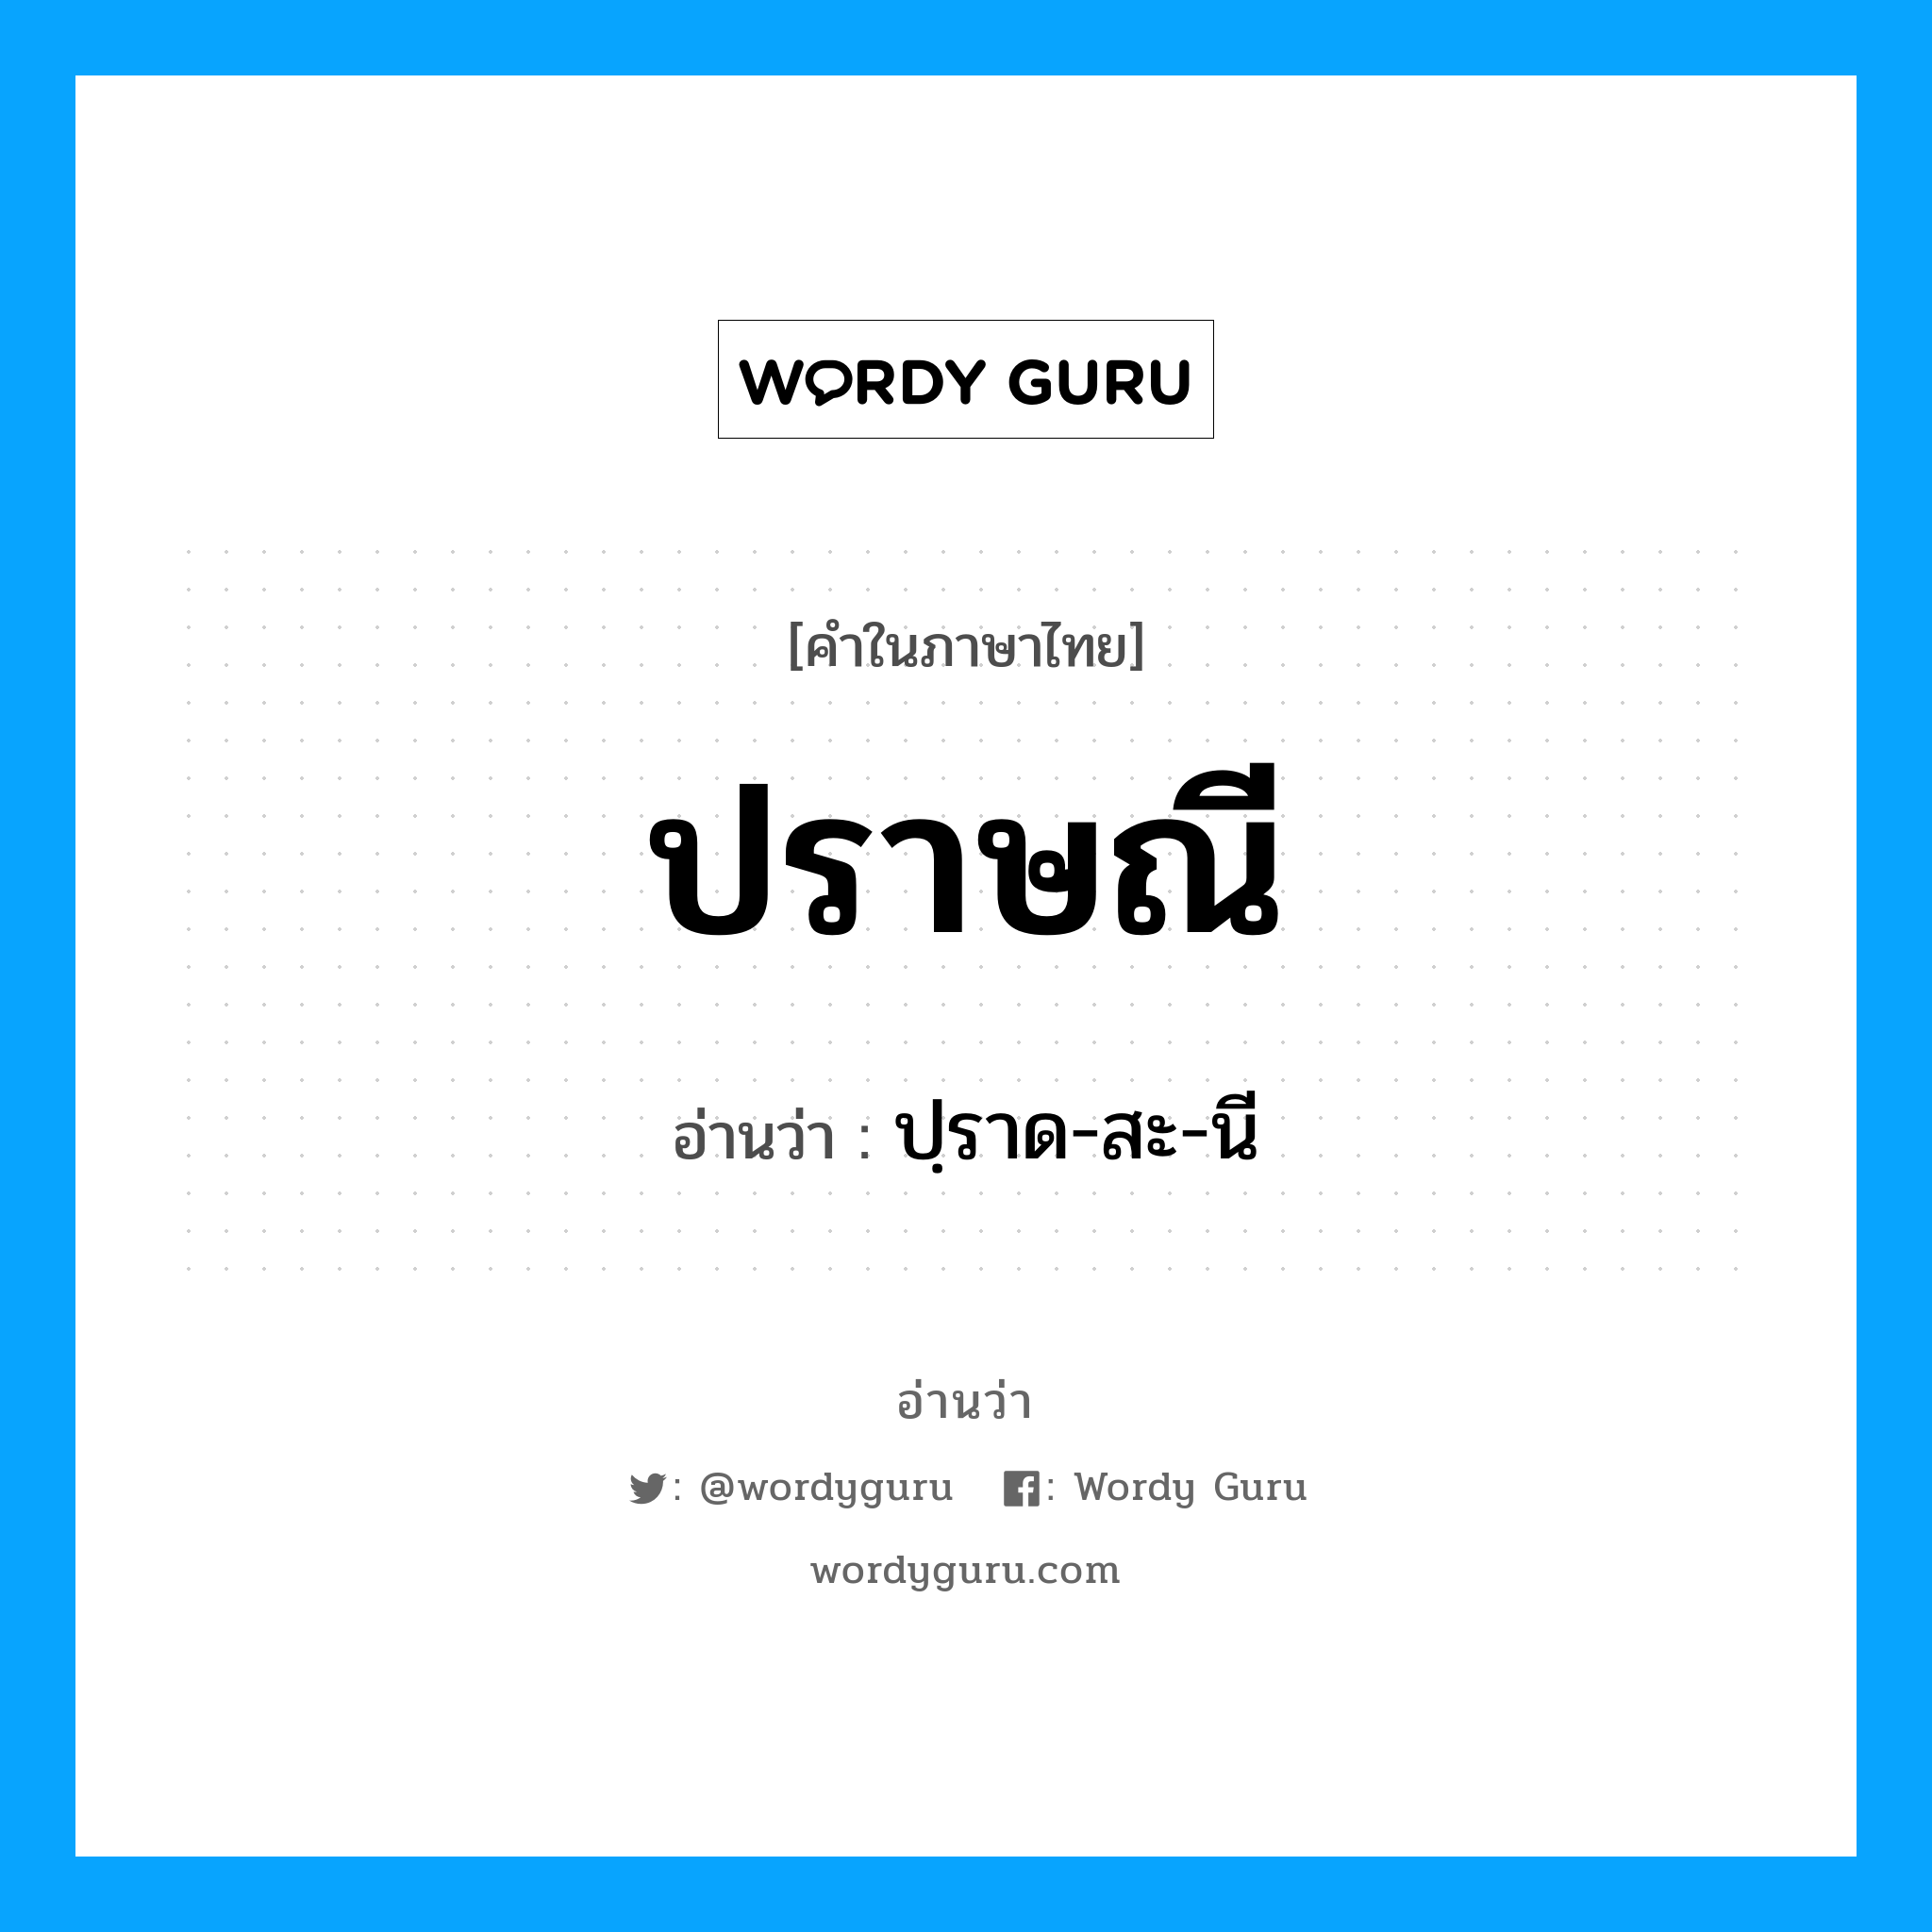 ปฺราด-สะ-นี เป็นคำอ่านของคำไหน?, คำในภาษาไทย ปฺราด-สะ-นี อ่านว่า ปราษณี